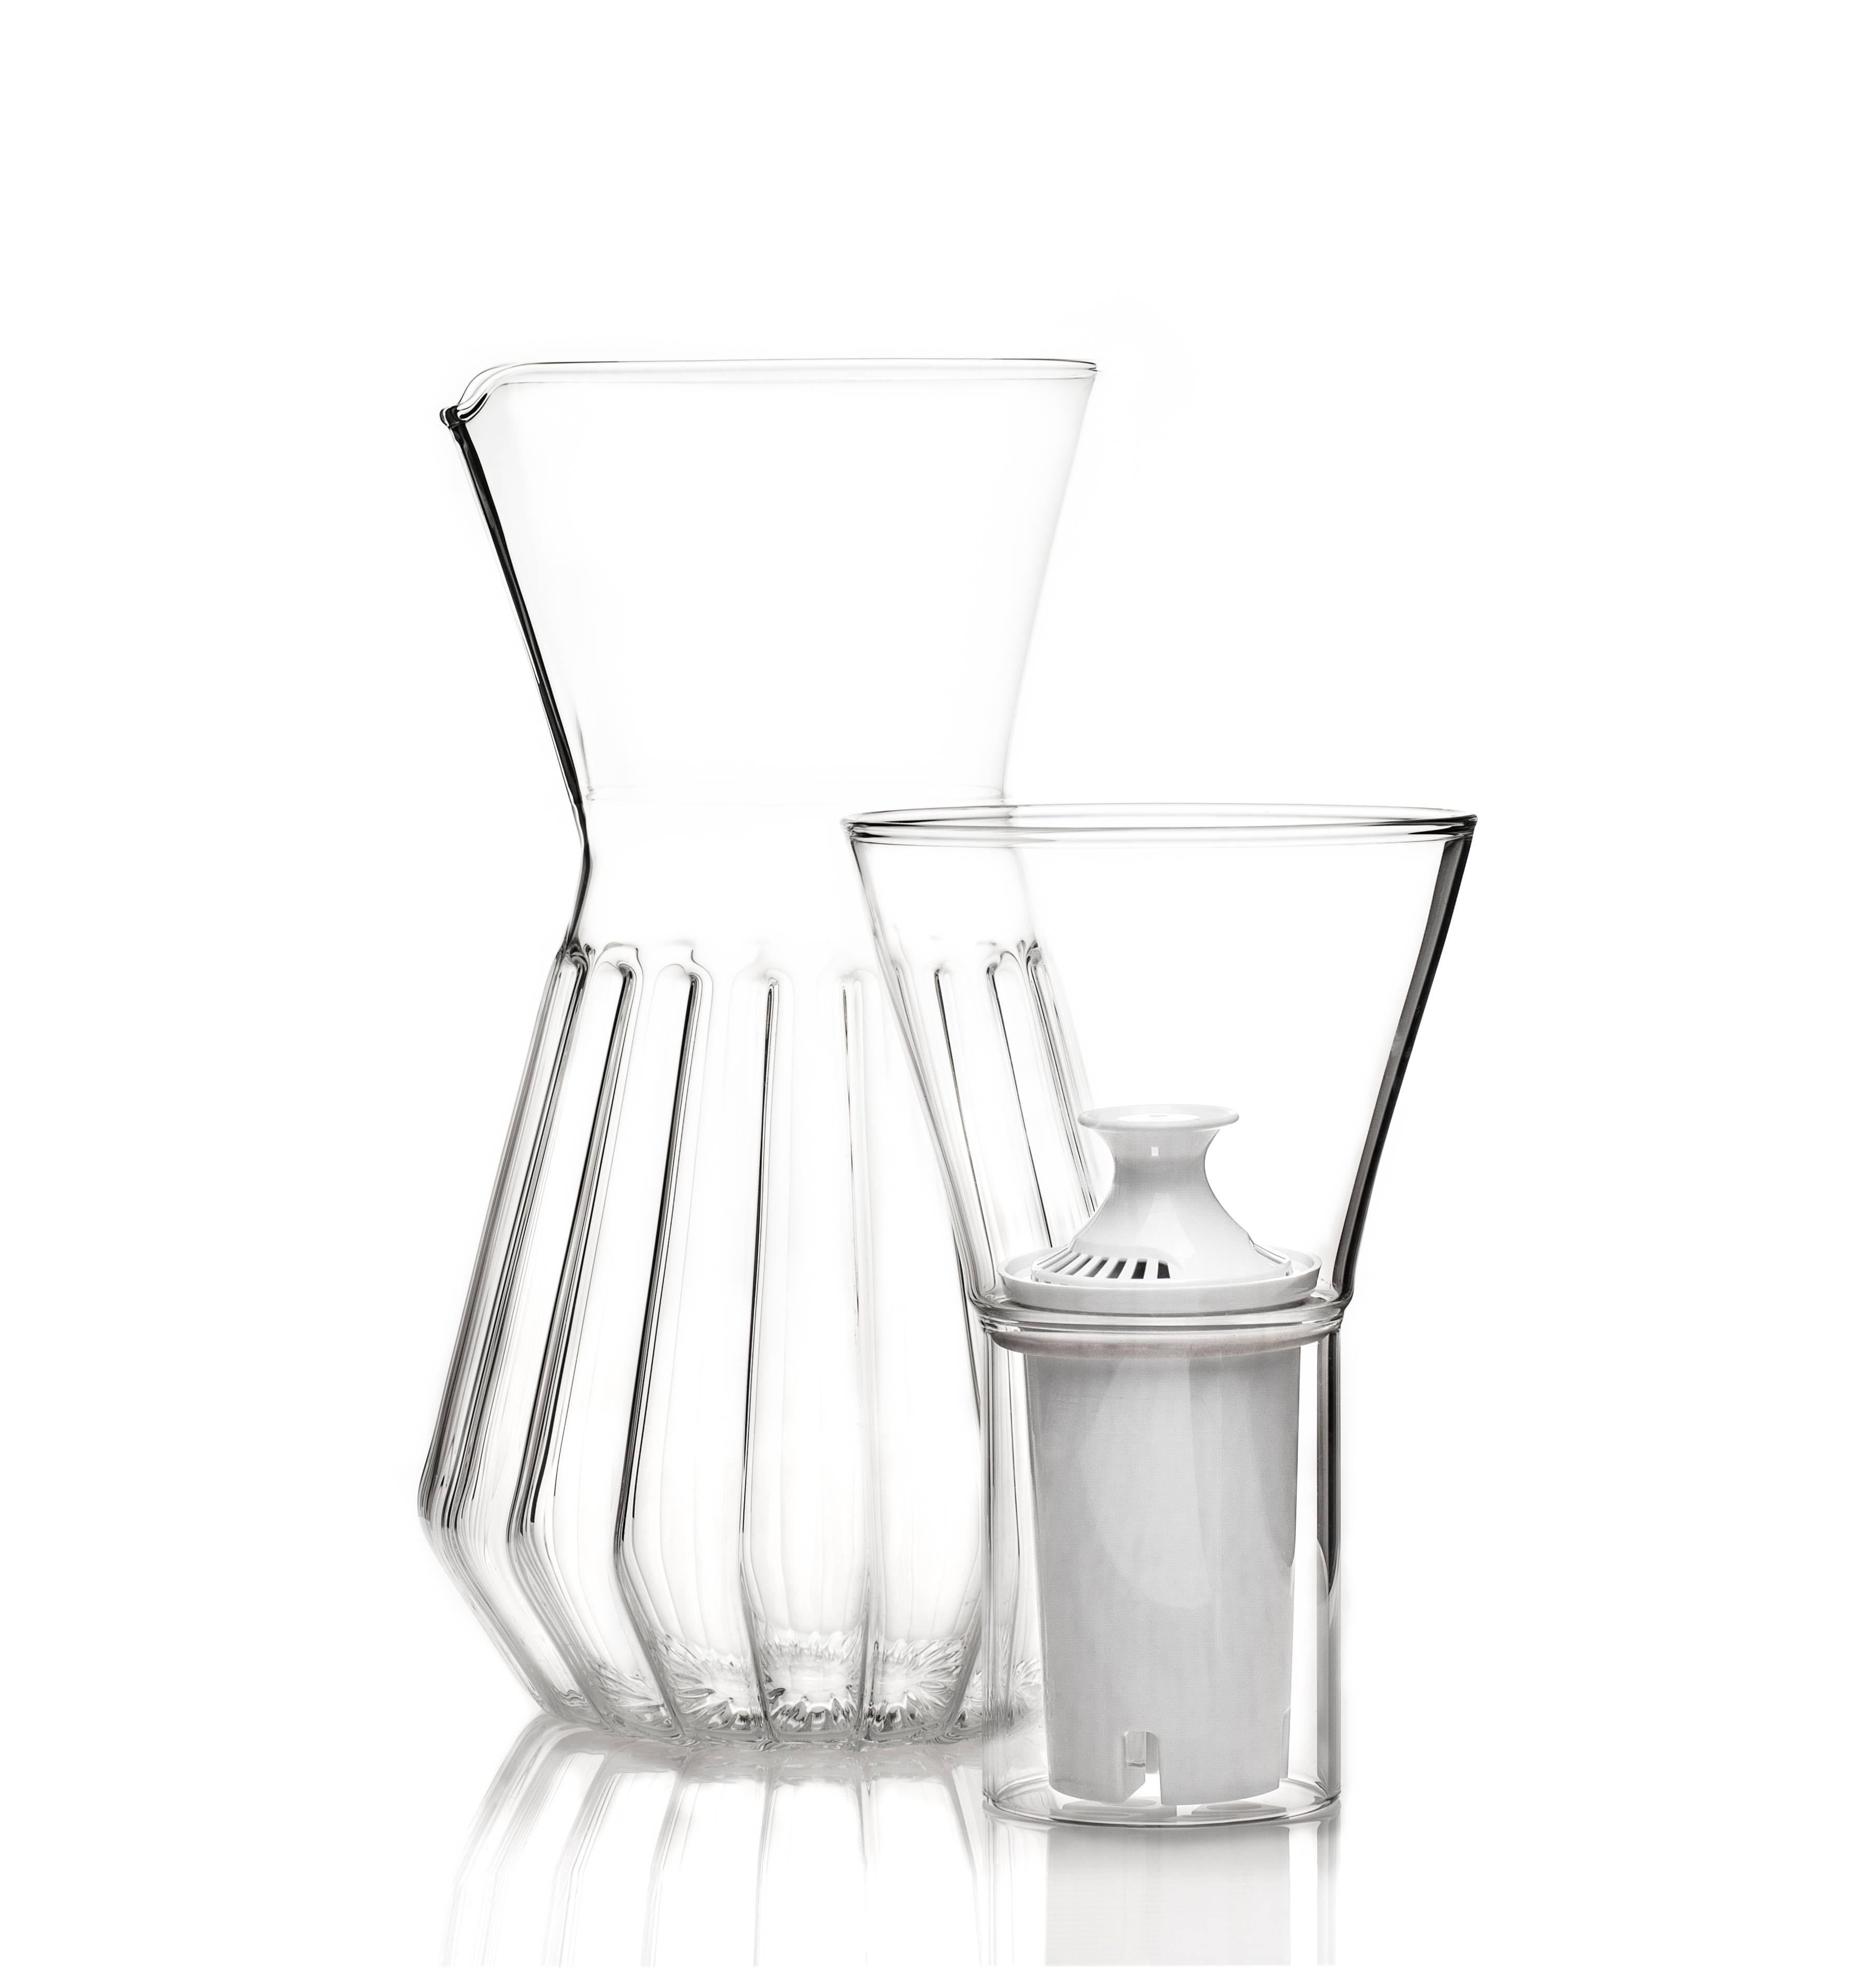 Dieses Set enthält eine geriffelte Talise-Karaffe und sechs gemischte kleine Gläser. 

Durch eine spezielle Technik, bei der zwei Glastypen miteinander verschmolzen werden, kann die geriffelte Talise mit Trichter für Wasser oder ohne Trichter für